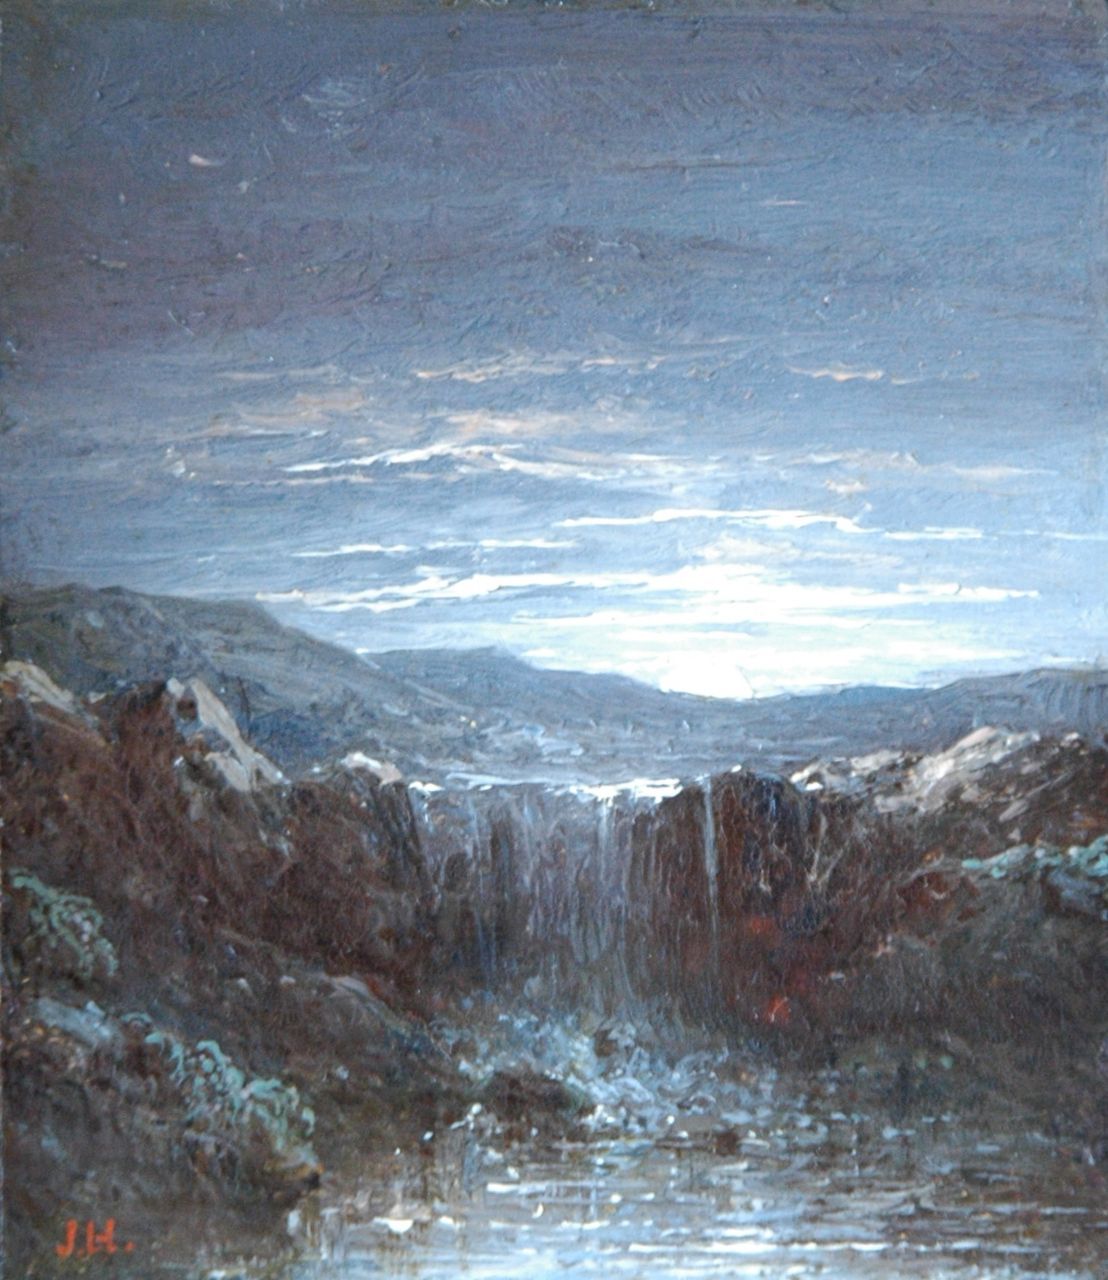 Hilverdink J.  | Johannes Hilverdink, Waterval bij maanlicht, olieverf op paneel 10,1 x 8,7 cm, gesigneerd linksonder met initialen, en geschonken aan de Kunsthal